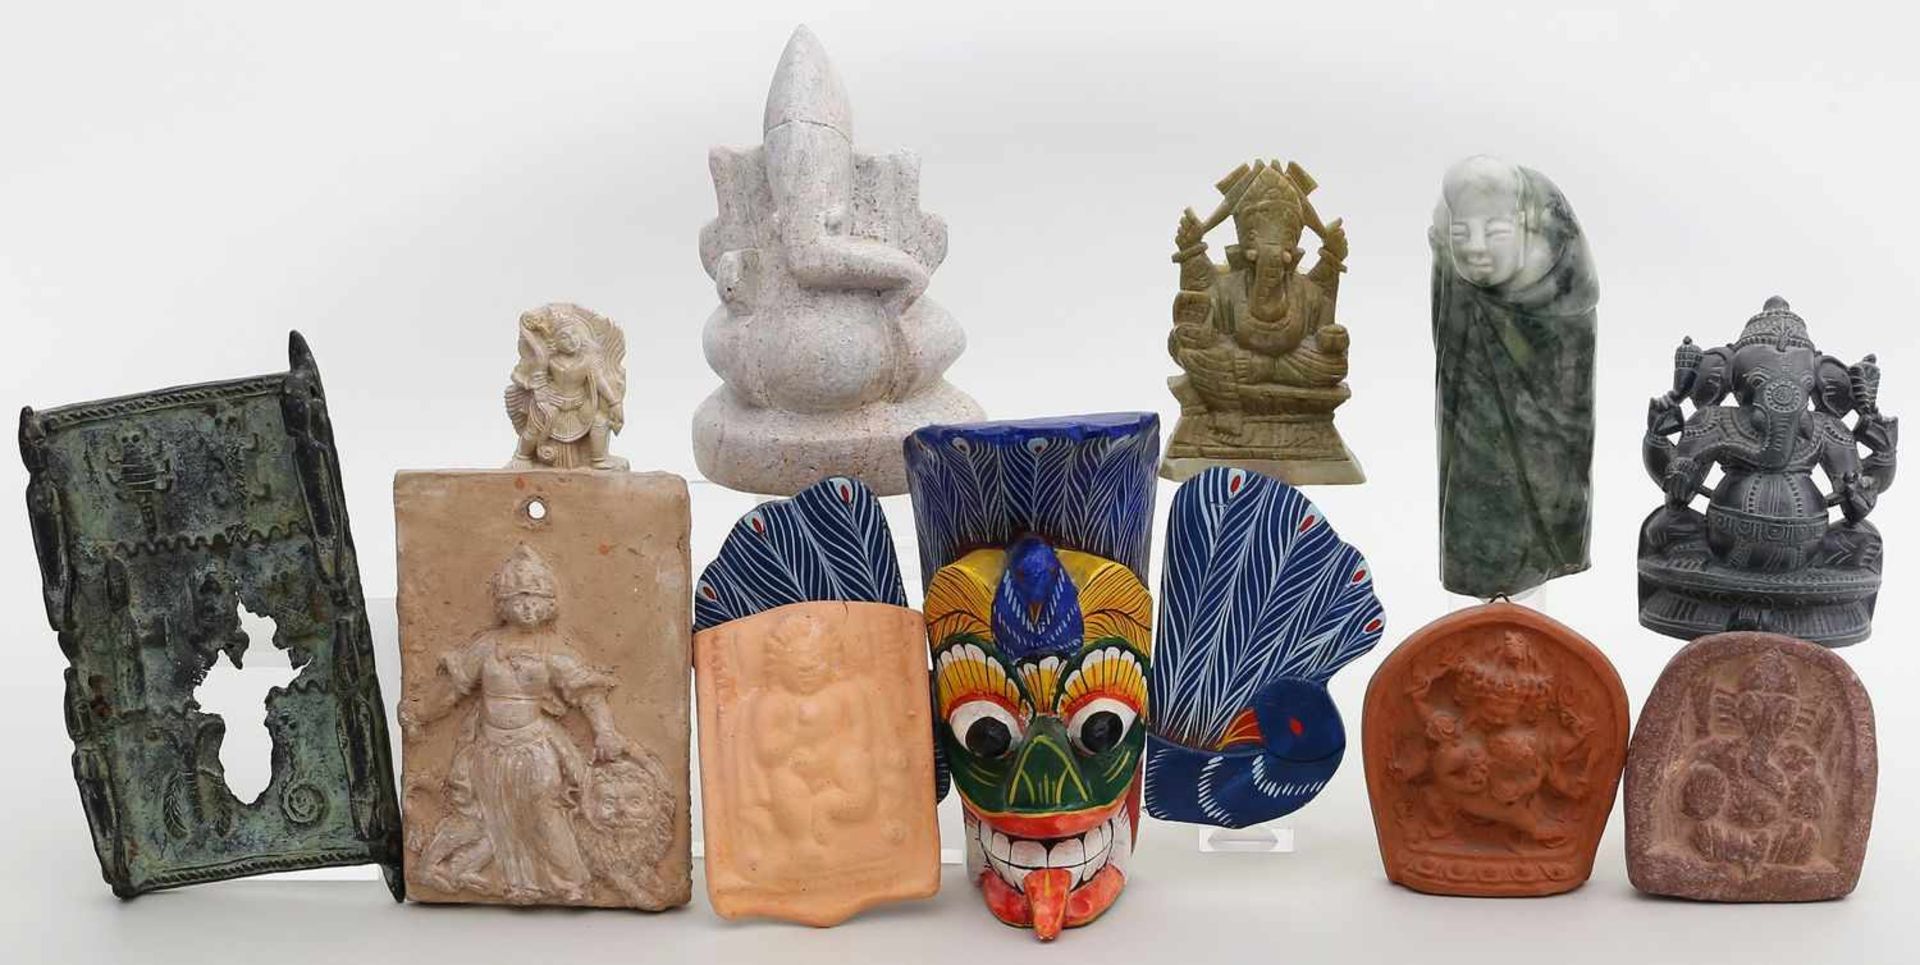 11 Raritäten.Dabei Darstellungen von Ganesha und weiteren Gottheiten sowie Reliefs und Skulpturen.